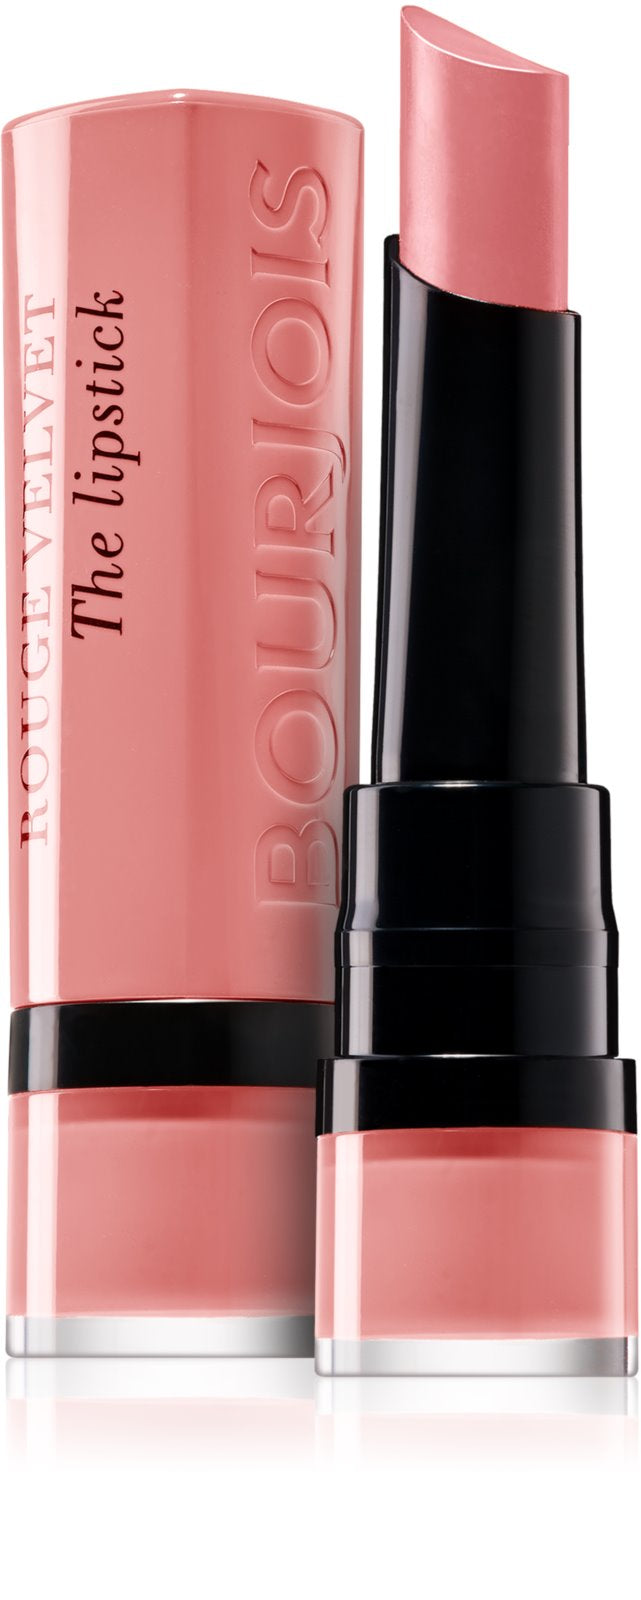 Bourjois Rouge Velvet Matte Lipstick 02 Flaming Rose